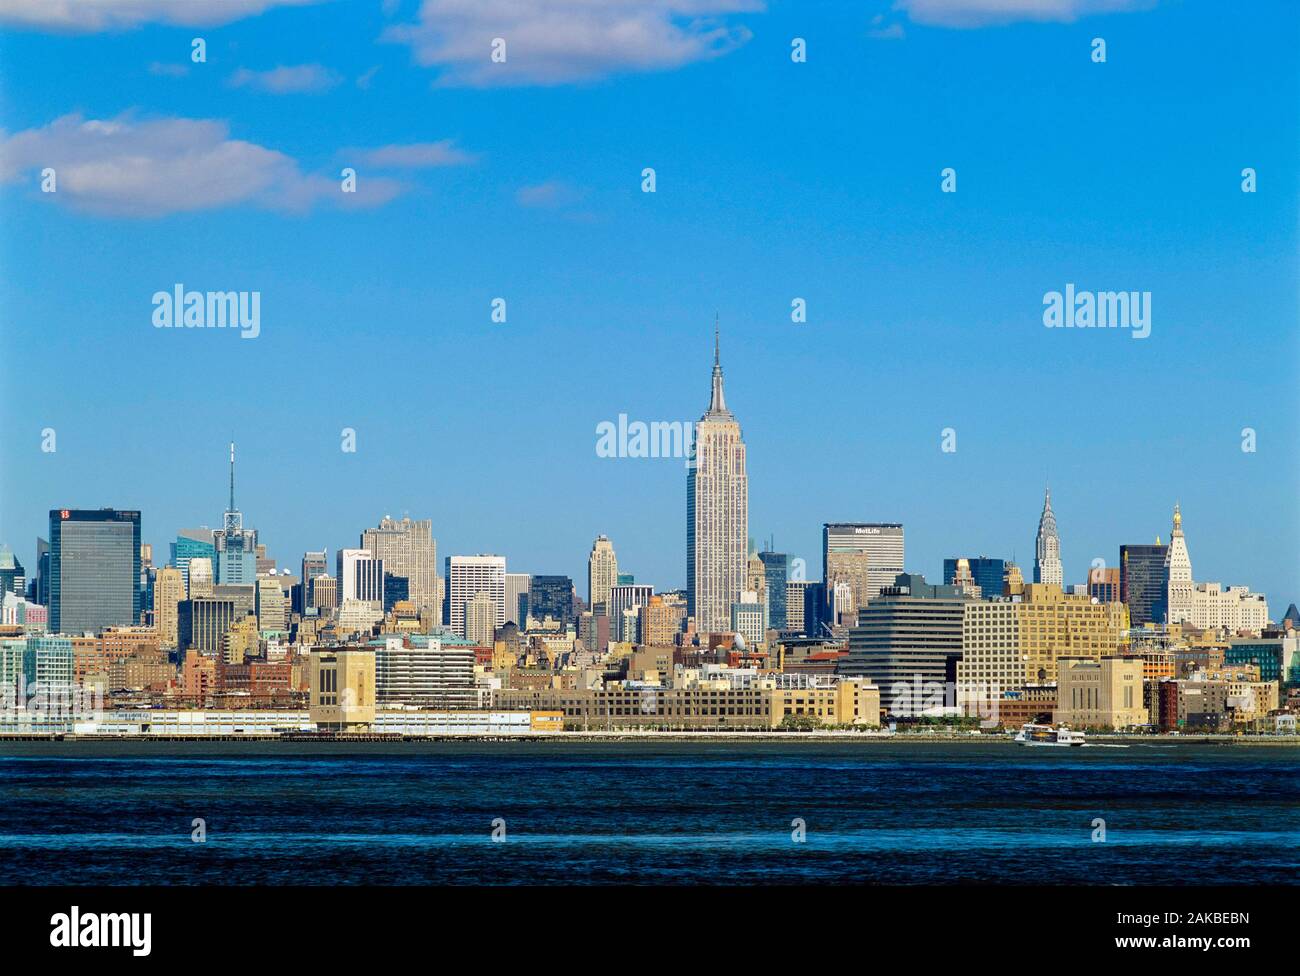 View of city, Manhattan, New York City, New York, USA Stock Photo